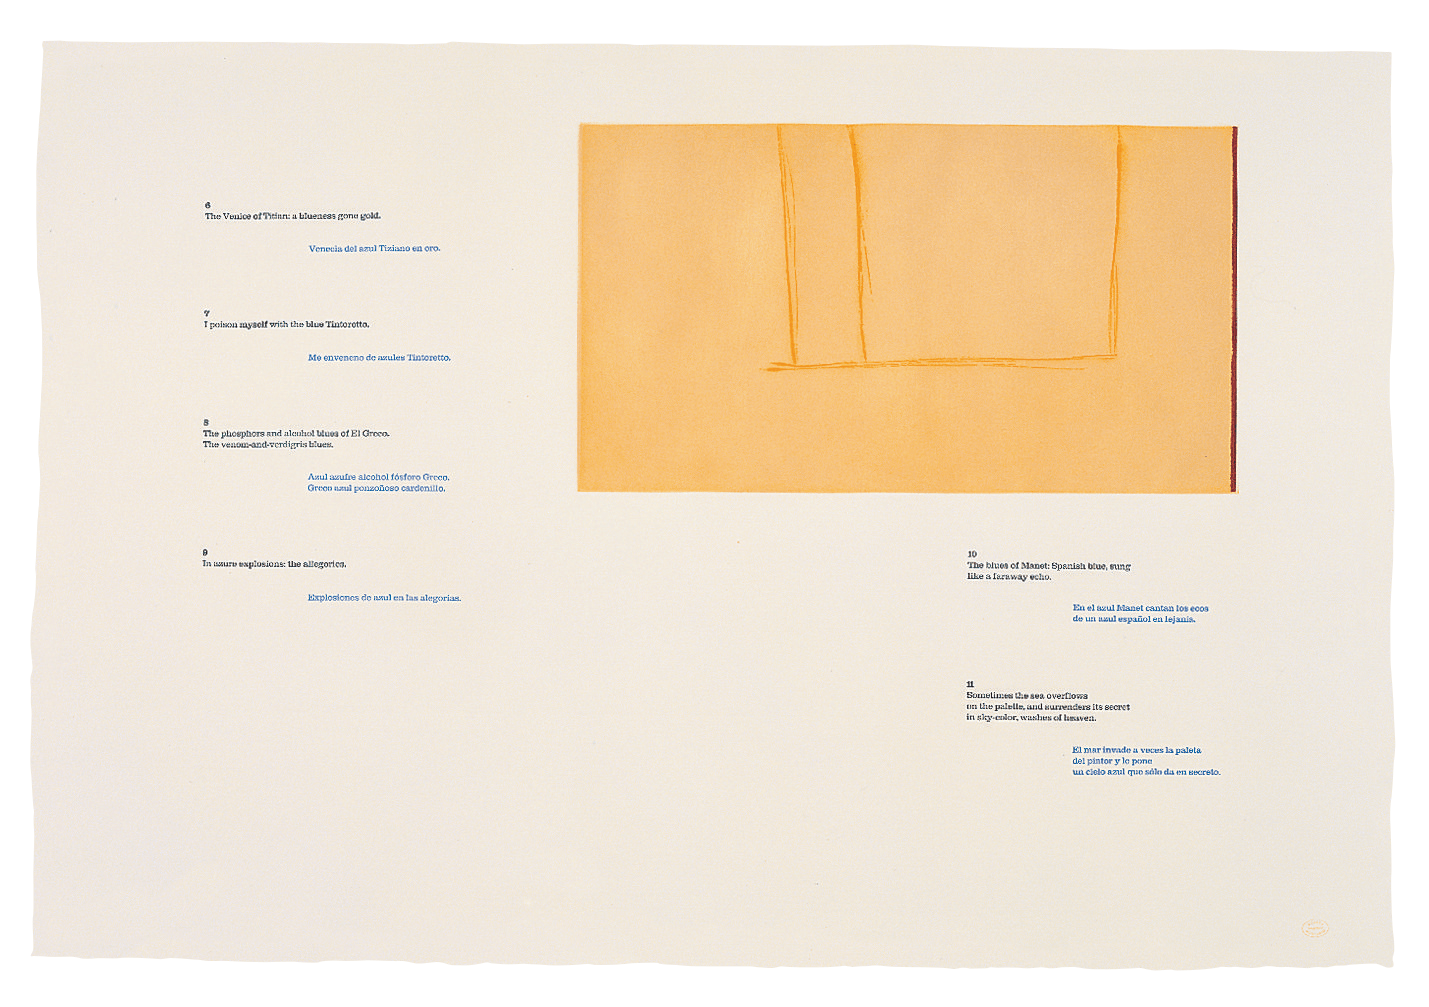 A la pintura Blue 6-11, 1972. Brushed aquatint, aquatint, lift-ground etching and aquatint, and letterpress on paper, 25 ½ x 38 inches (64.8 x 96.5 cm)